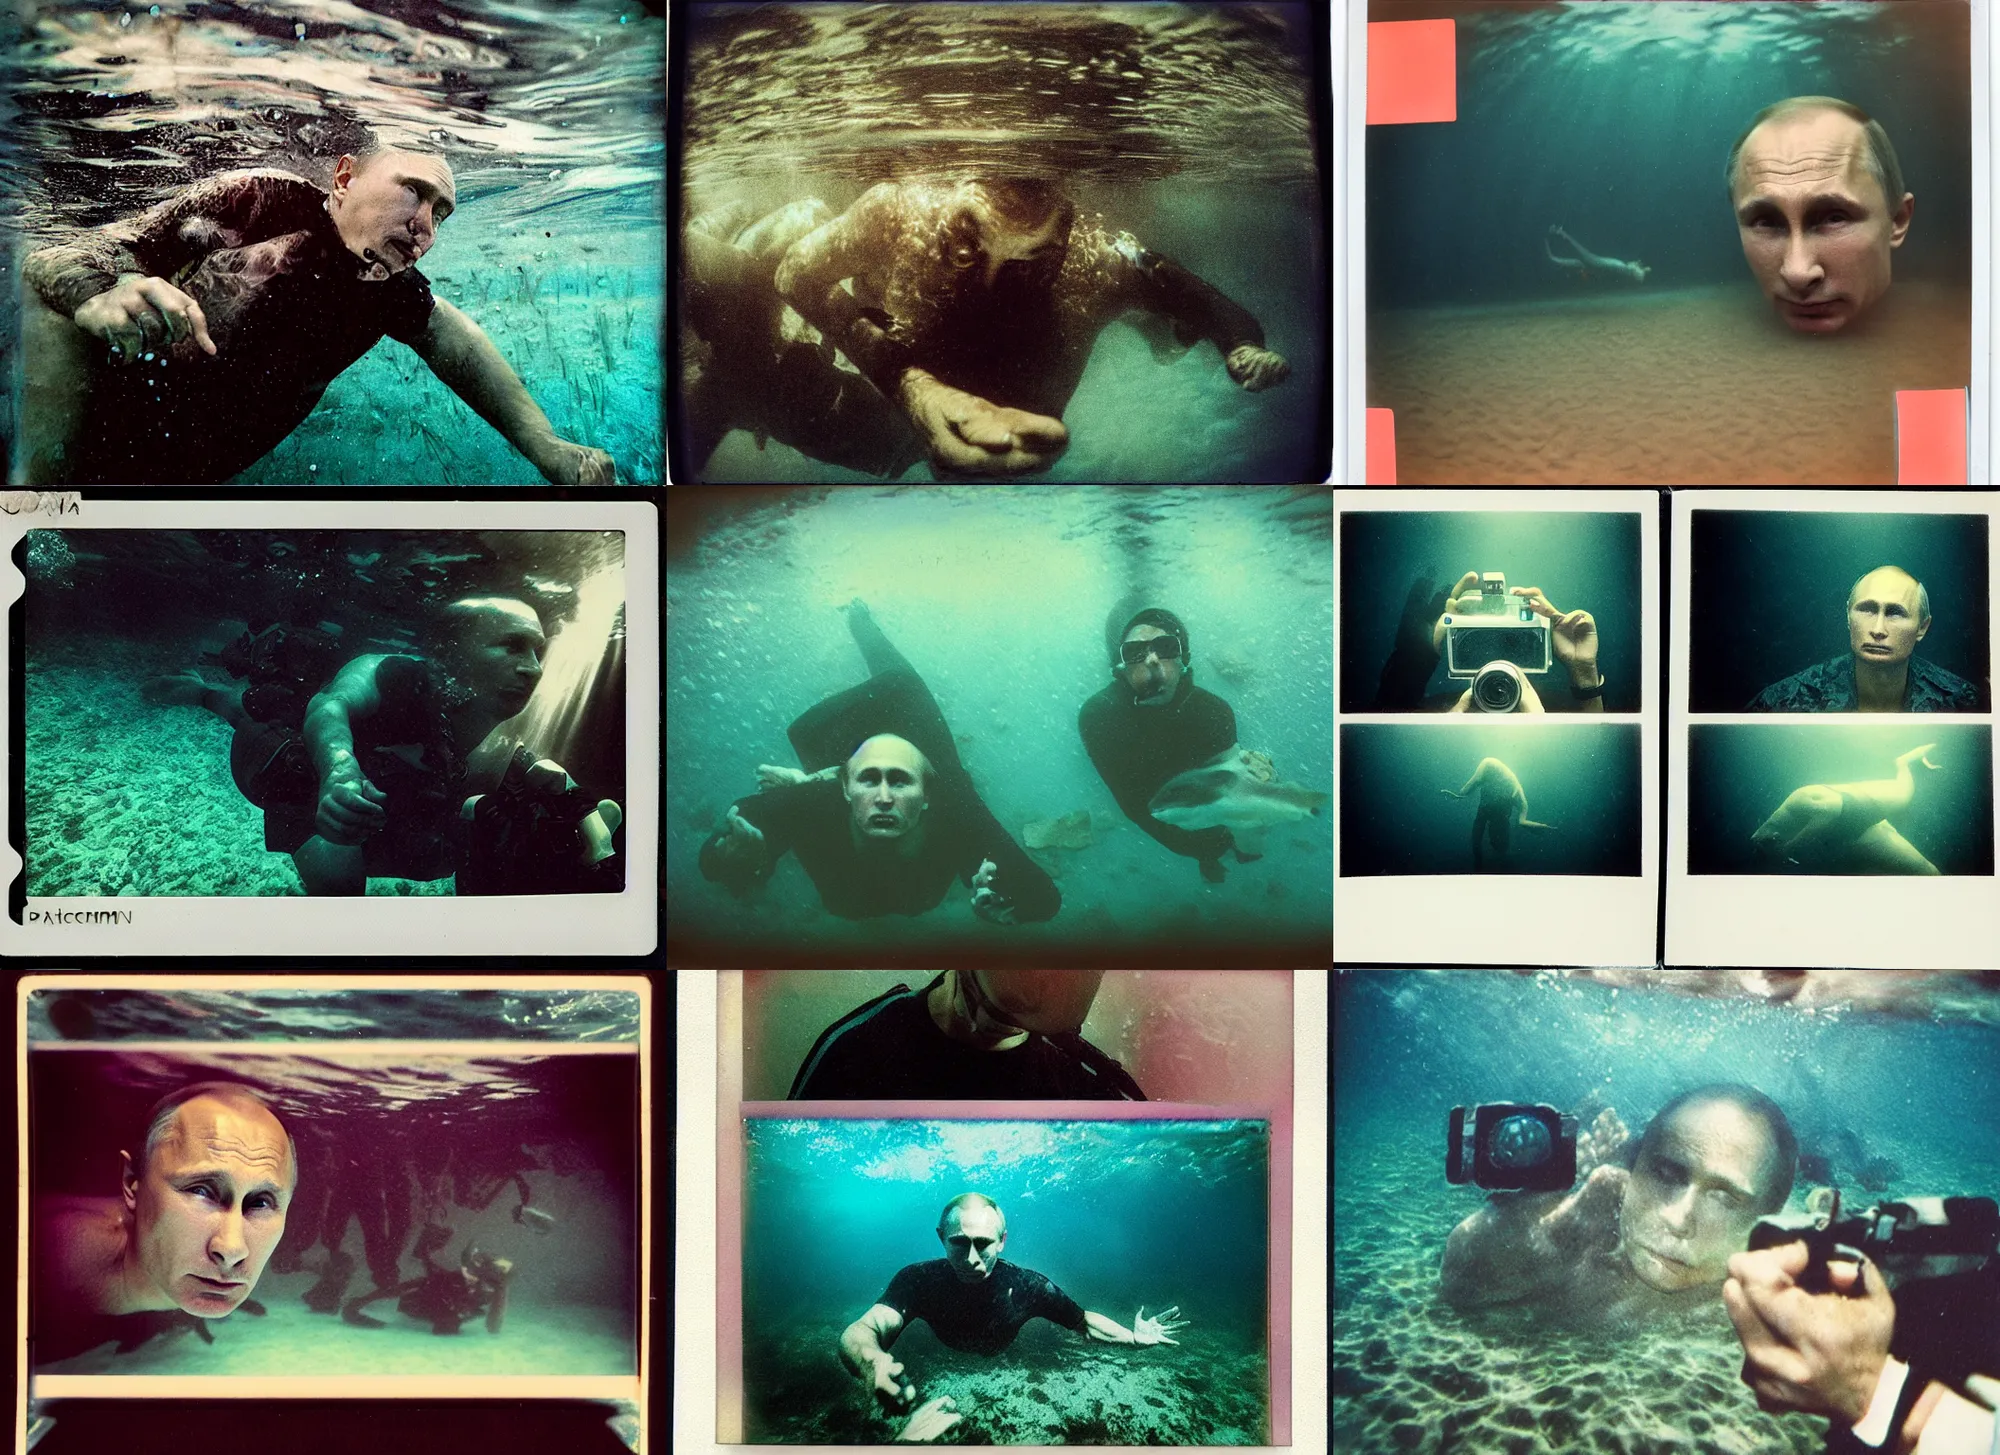 Prompt: vladimir putin close up underwater, underwater polaroid photo, vintage, neutral colors, underwater, by shawn heinrichs and gregory crewdson